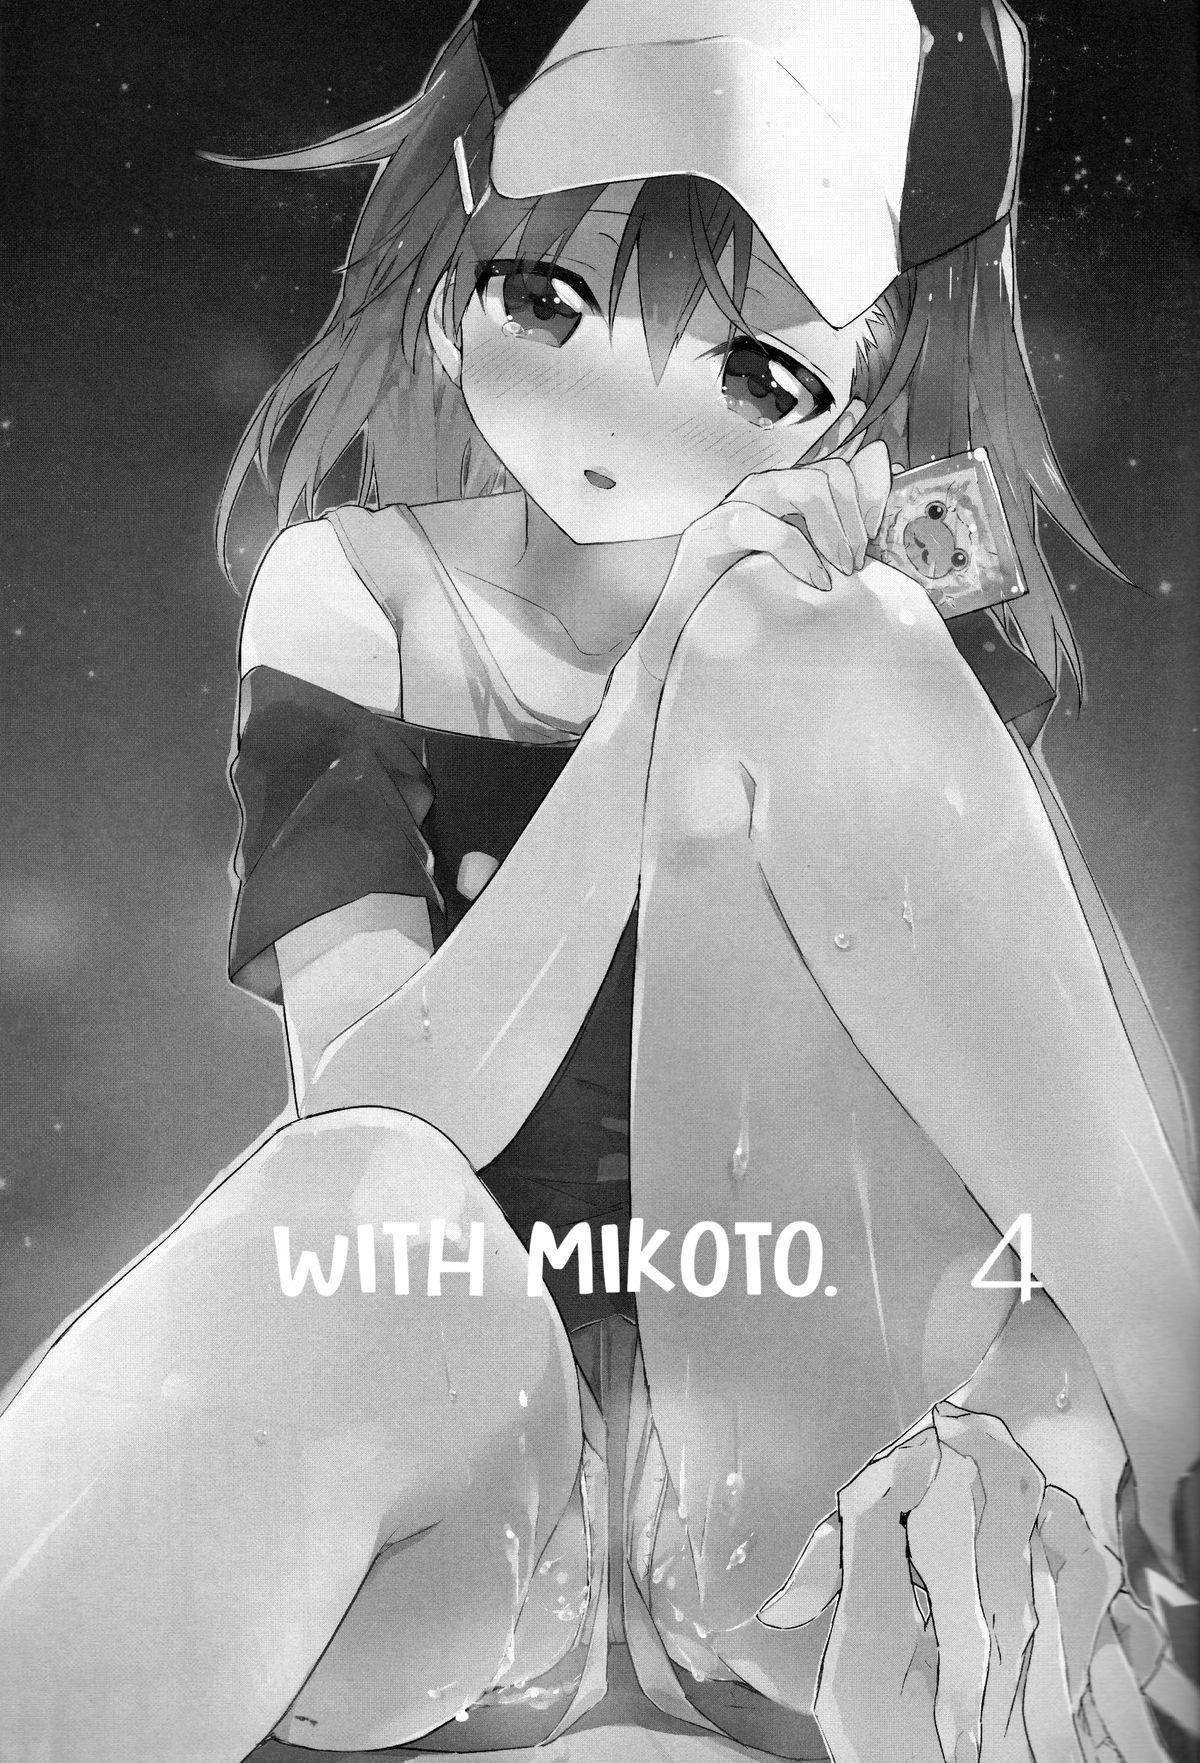 Whipping Mikoto to. 4 | With Mikoto. 4 - Toaru kagaku no railgun Toaru majutsu no index Solo - Page 2